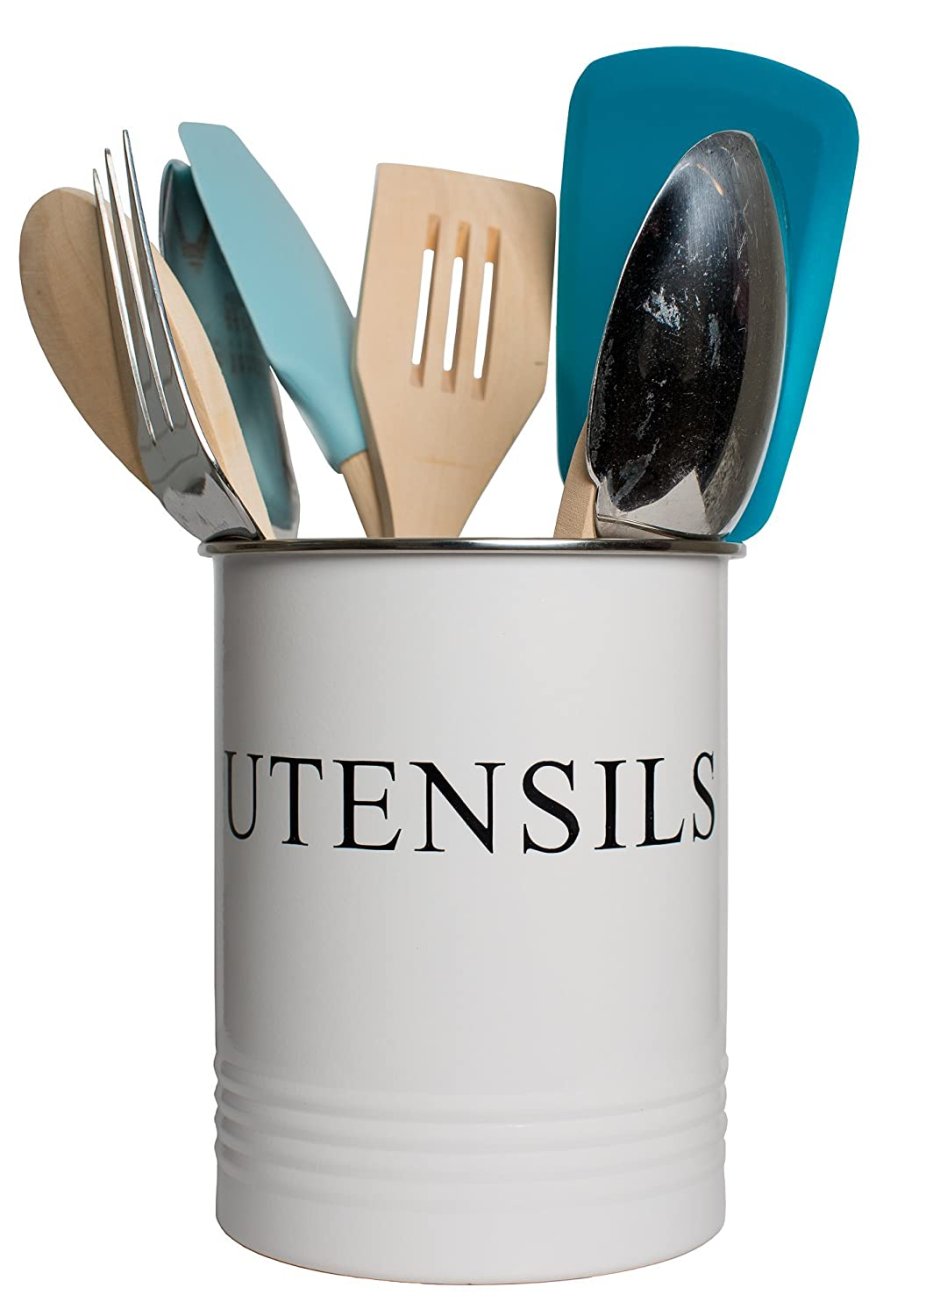 Kitchen utensil organizer